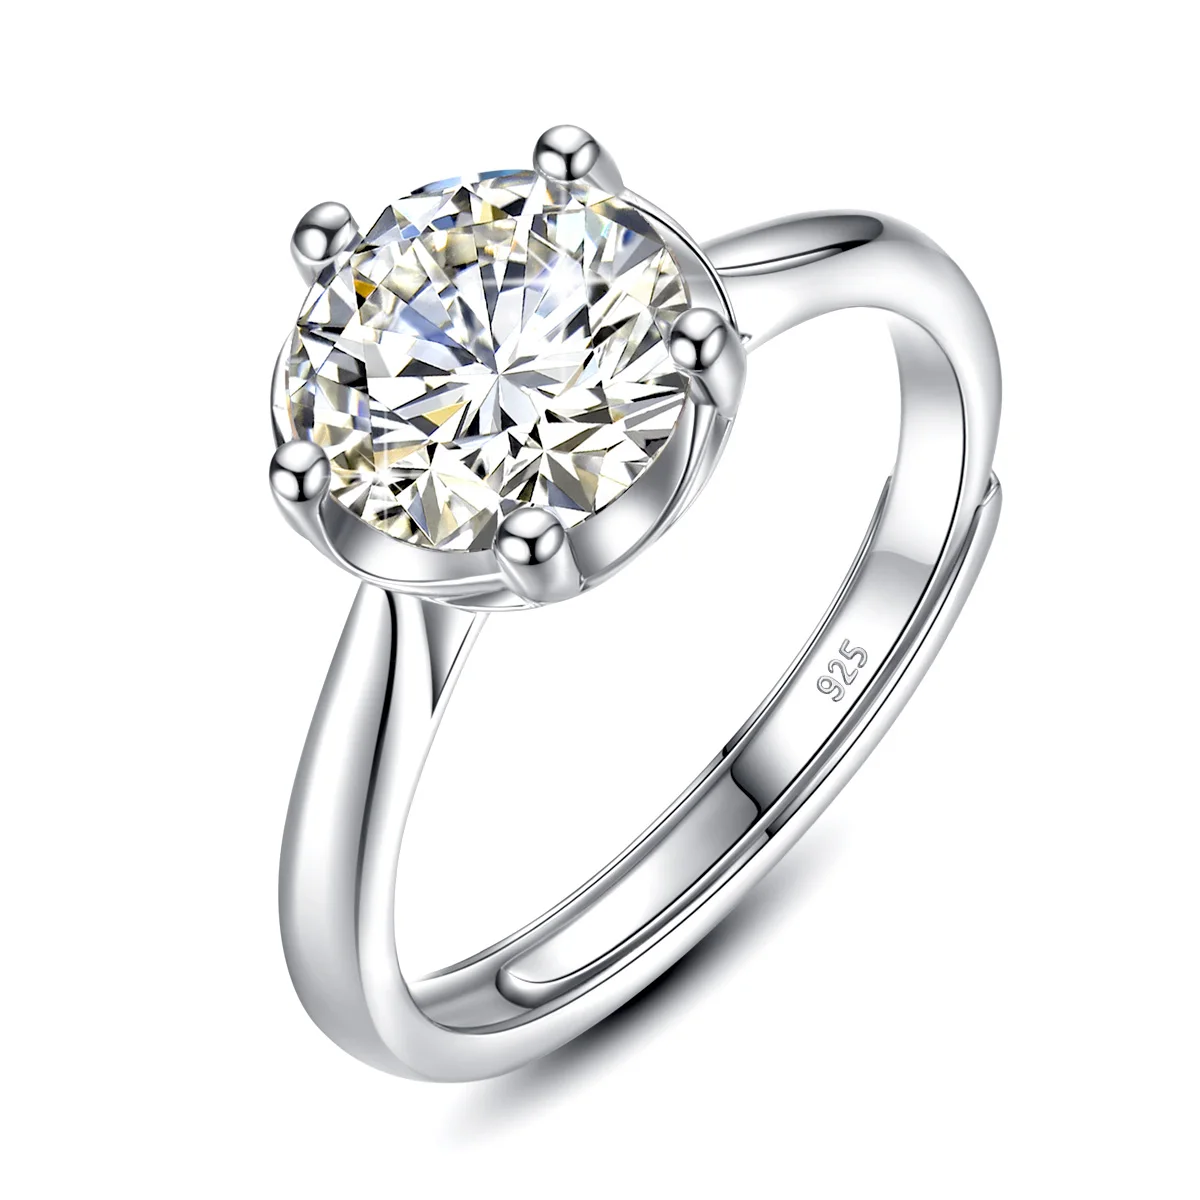 

Кольцо женское диаметром 2 карата с мусанитом, регулируемое обручальное кольцо с 5 зубцами, роскошное ювелирное изделие с бриллиантами, хоро...